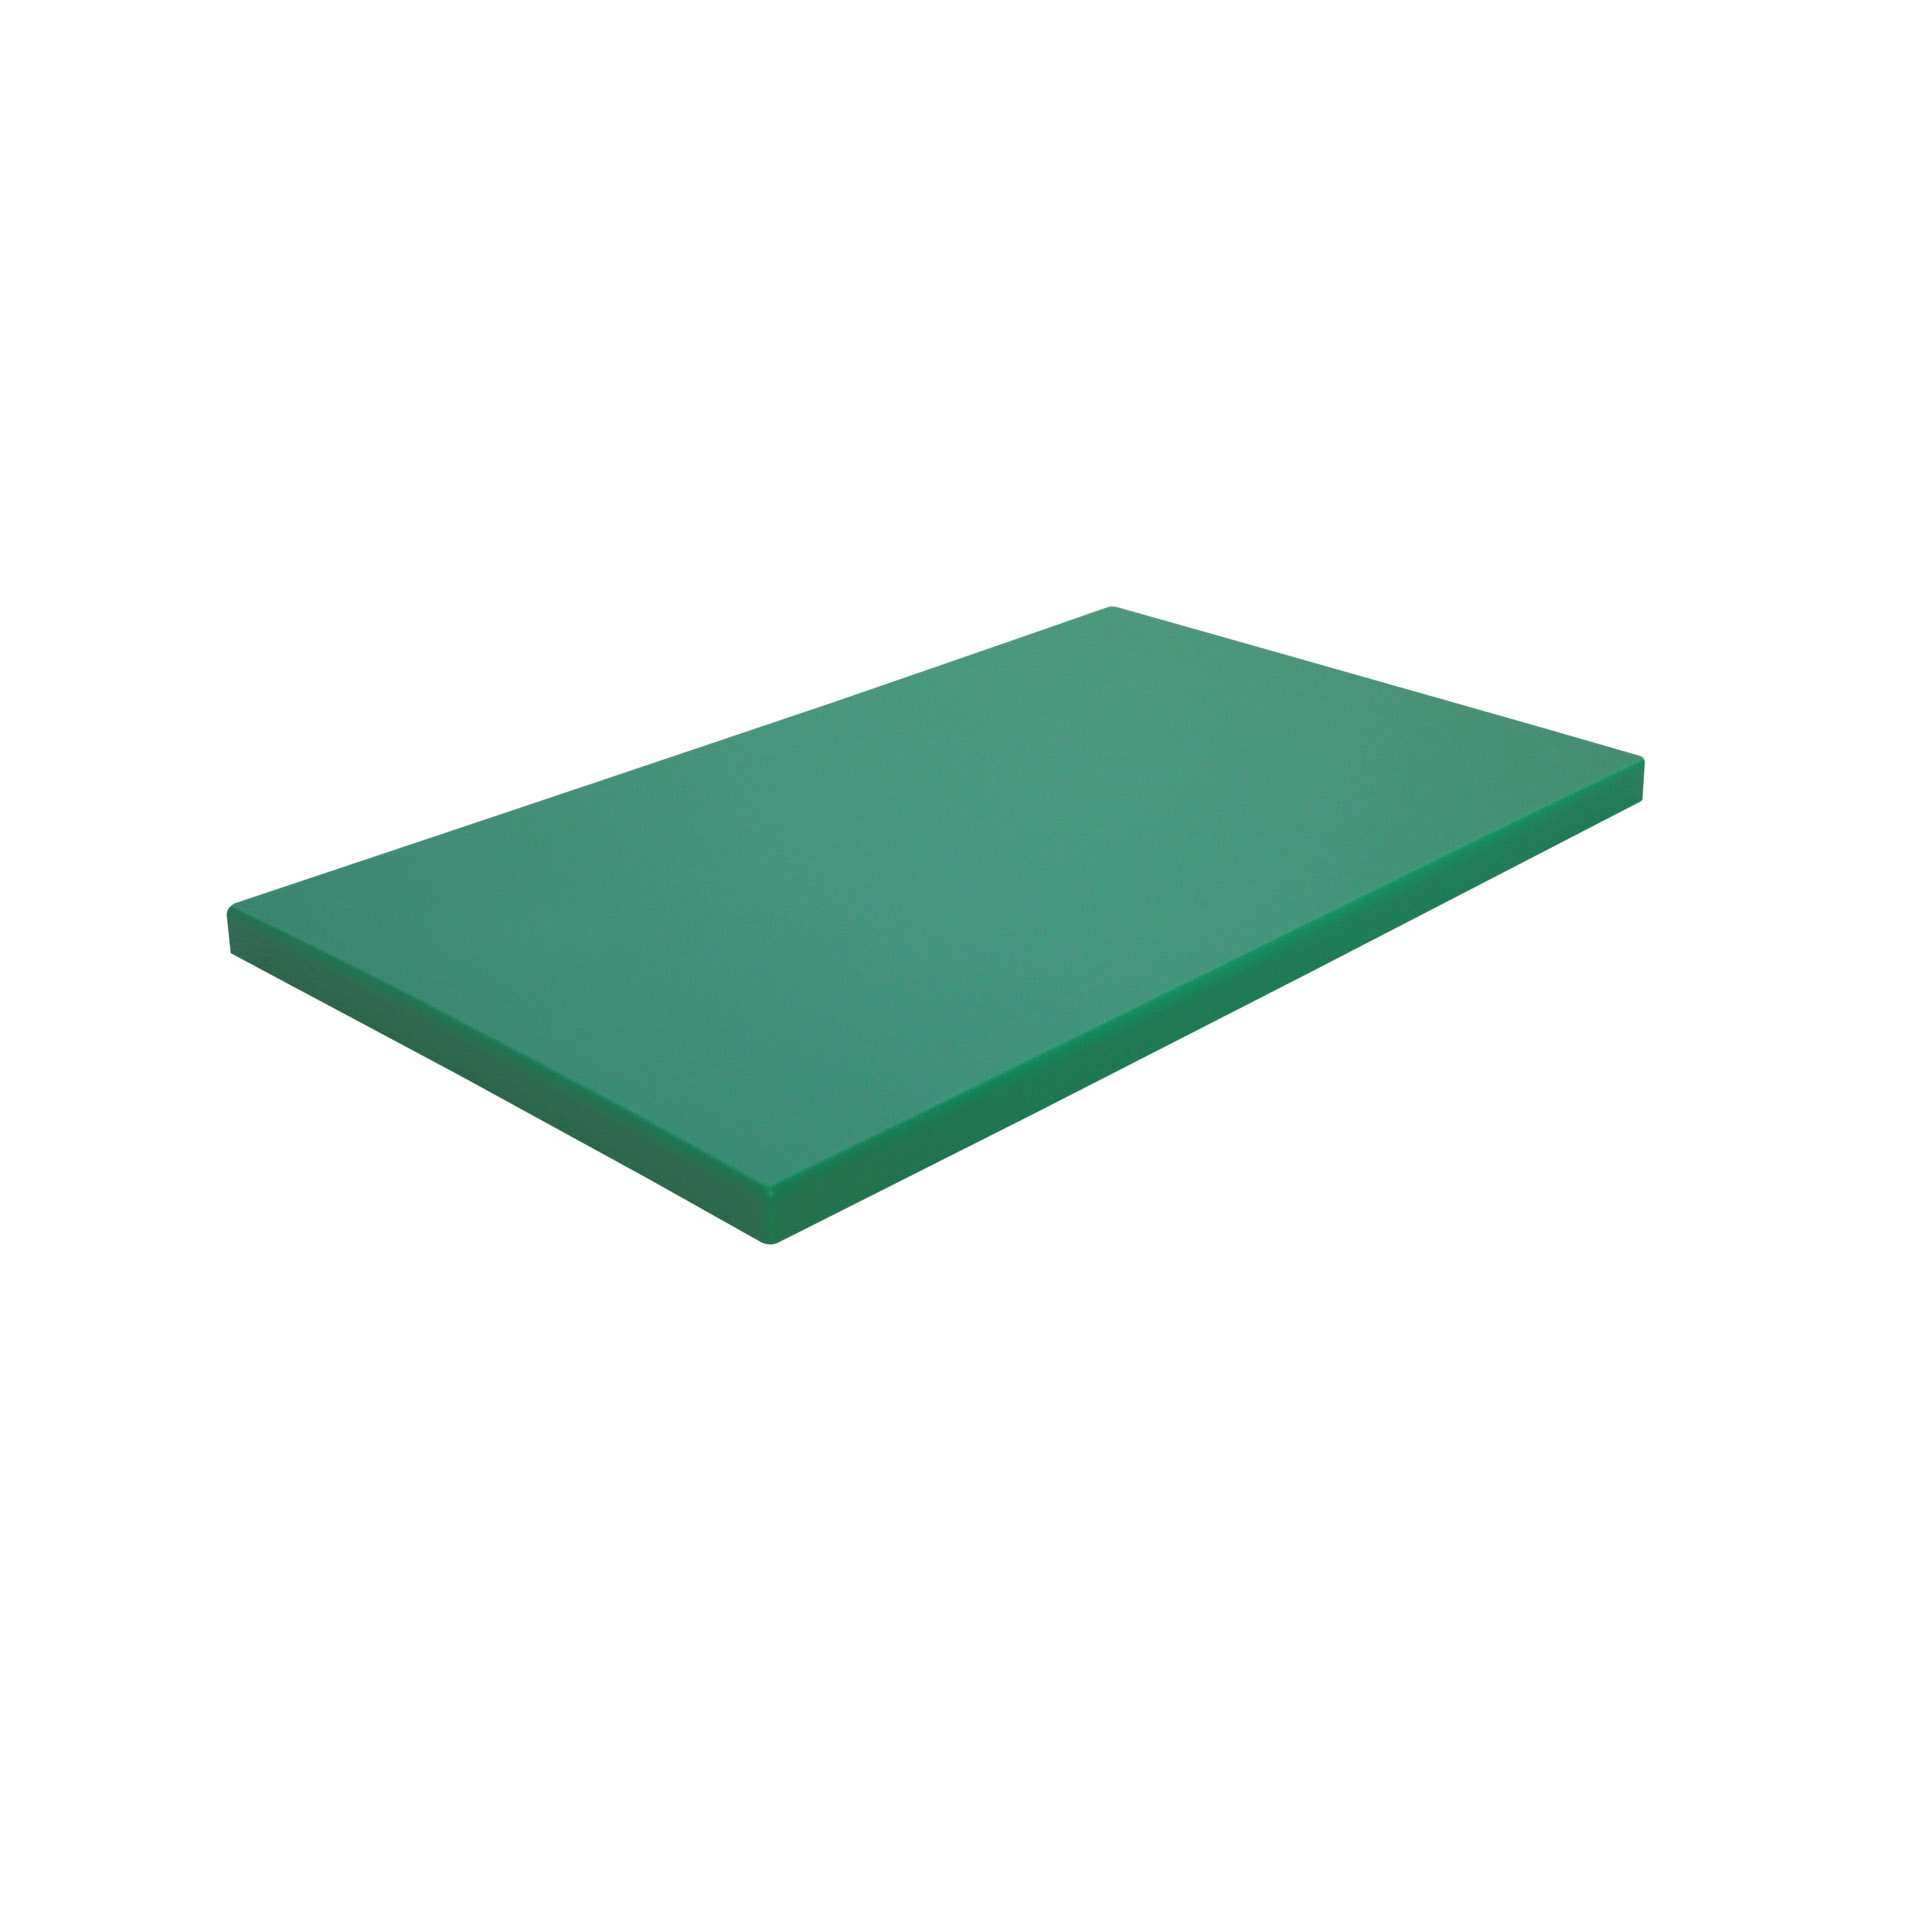 GN-Schneidebrett - mit Füßen - grün - GN 1/1 (530 x 325 mm) - Polyethylen - 228312-C